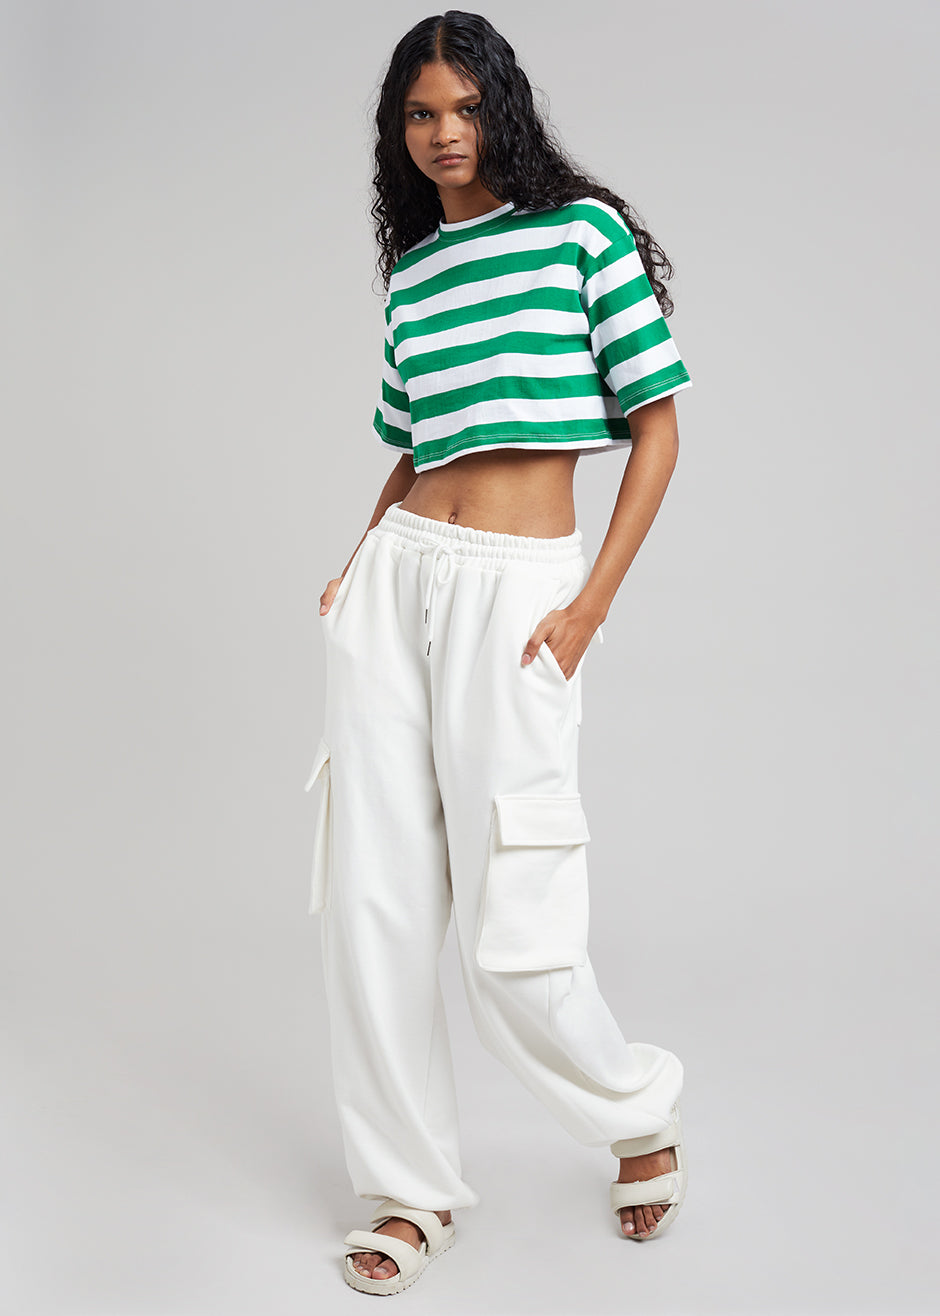 sæt ind sjælden mosaik Karina Cropped T-Shirt - Green/White – Frankie Shop Europe